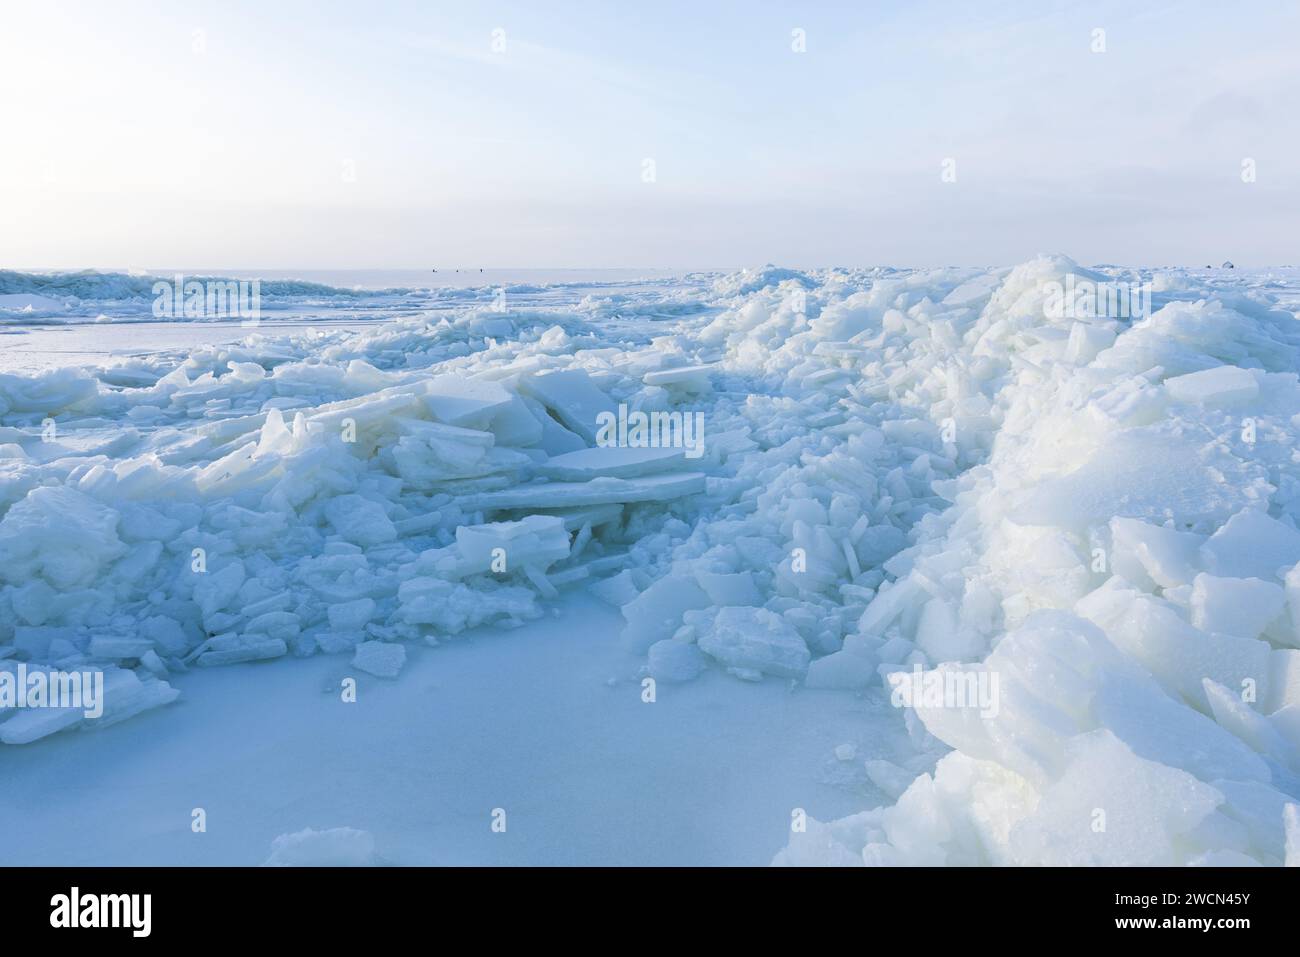 Photo de paysage d'hiver. Bosses de glace couvertes de neige et de glace de la mer Baltique par une journée ensoleillée Banque D'Images